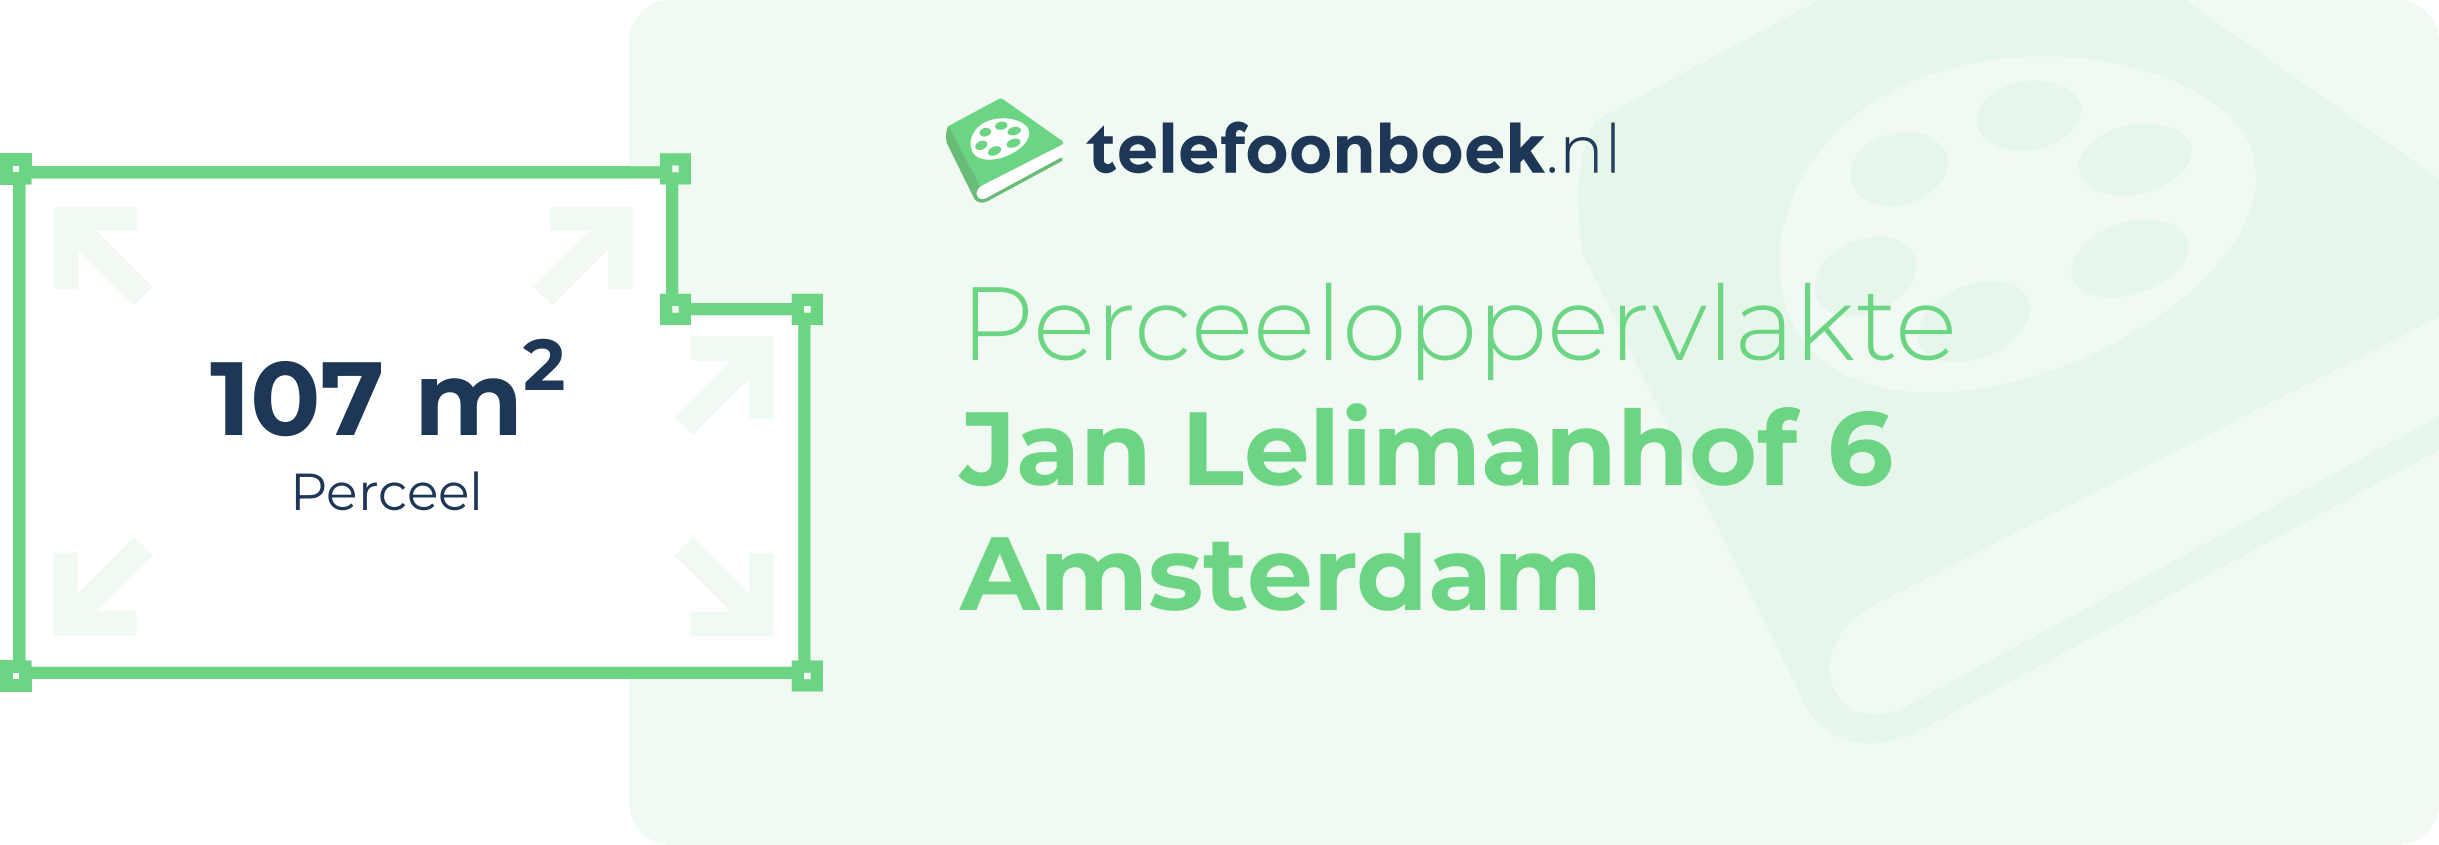 Perceeloppervlakte Jan Lelimanhof 6 Amsterdam